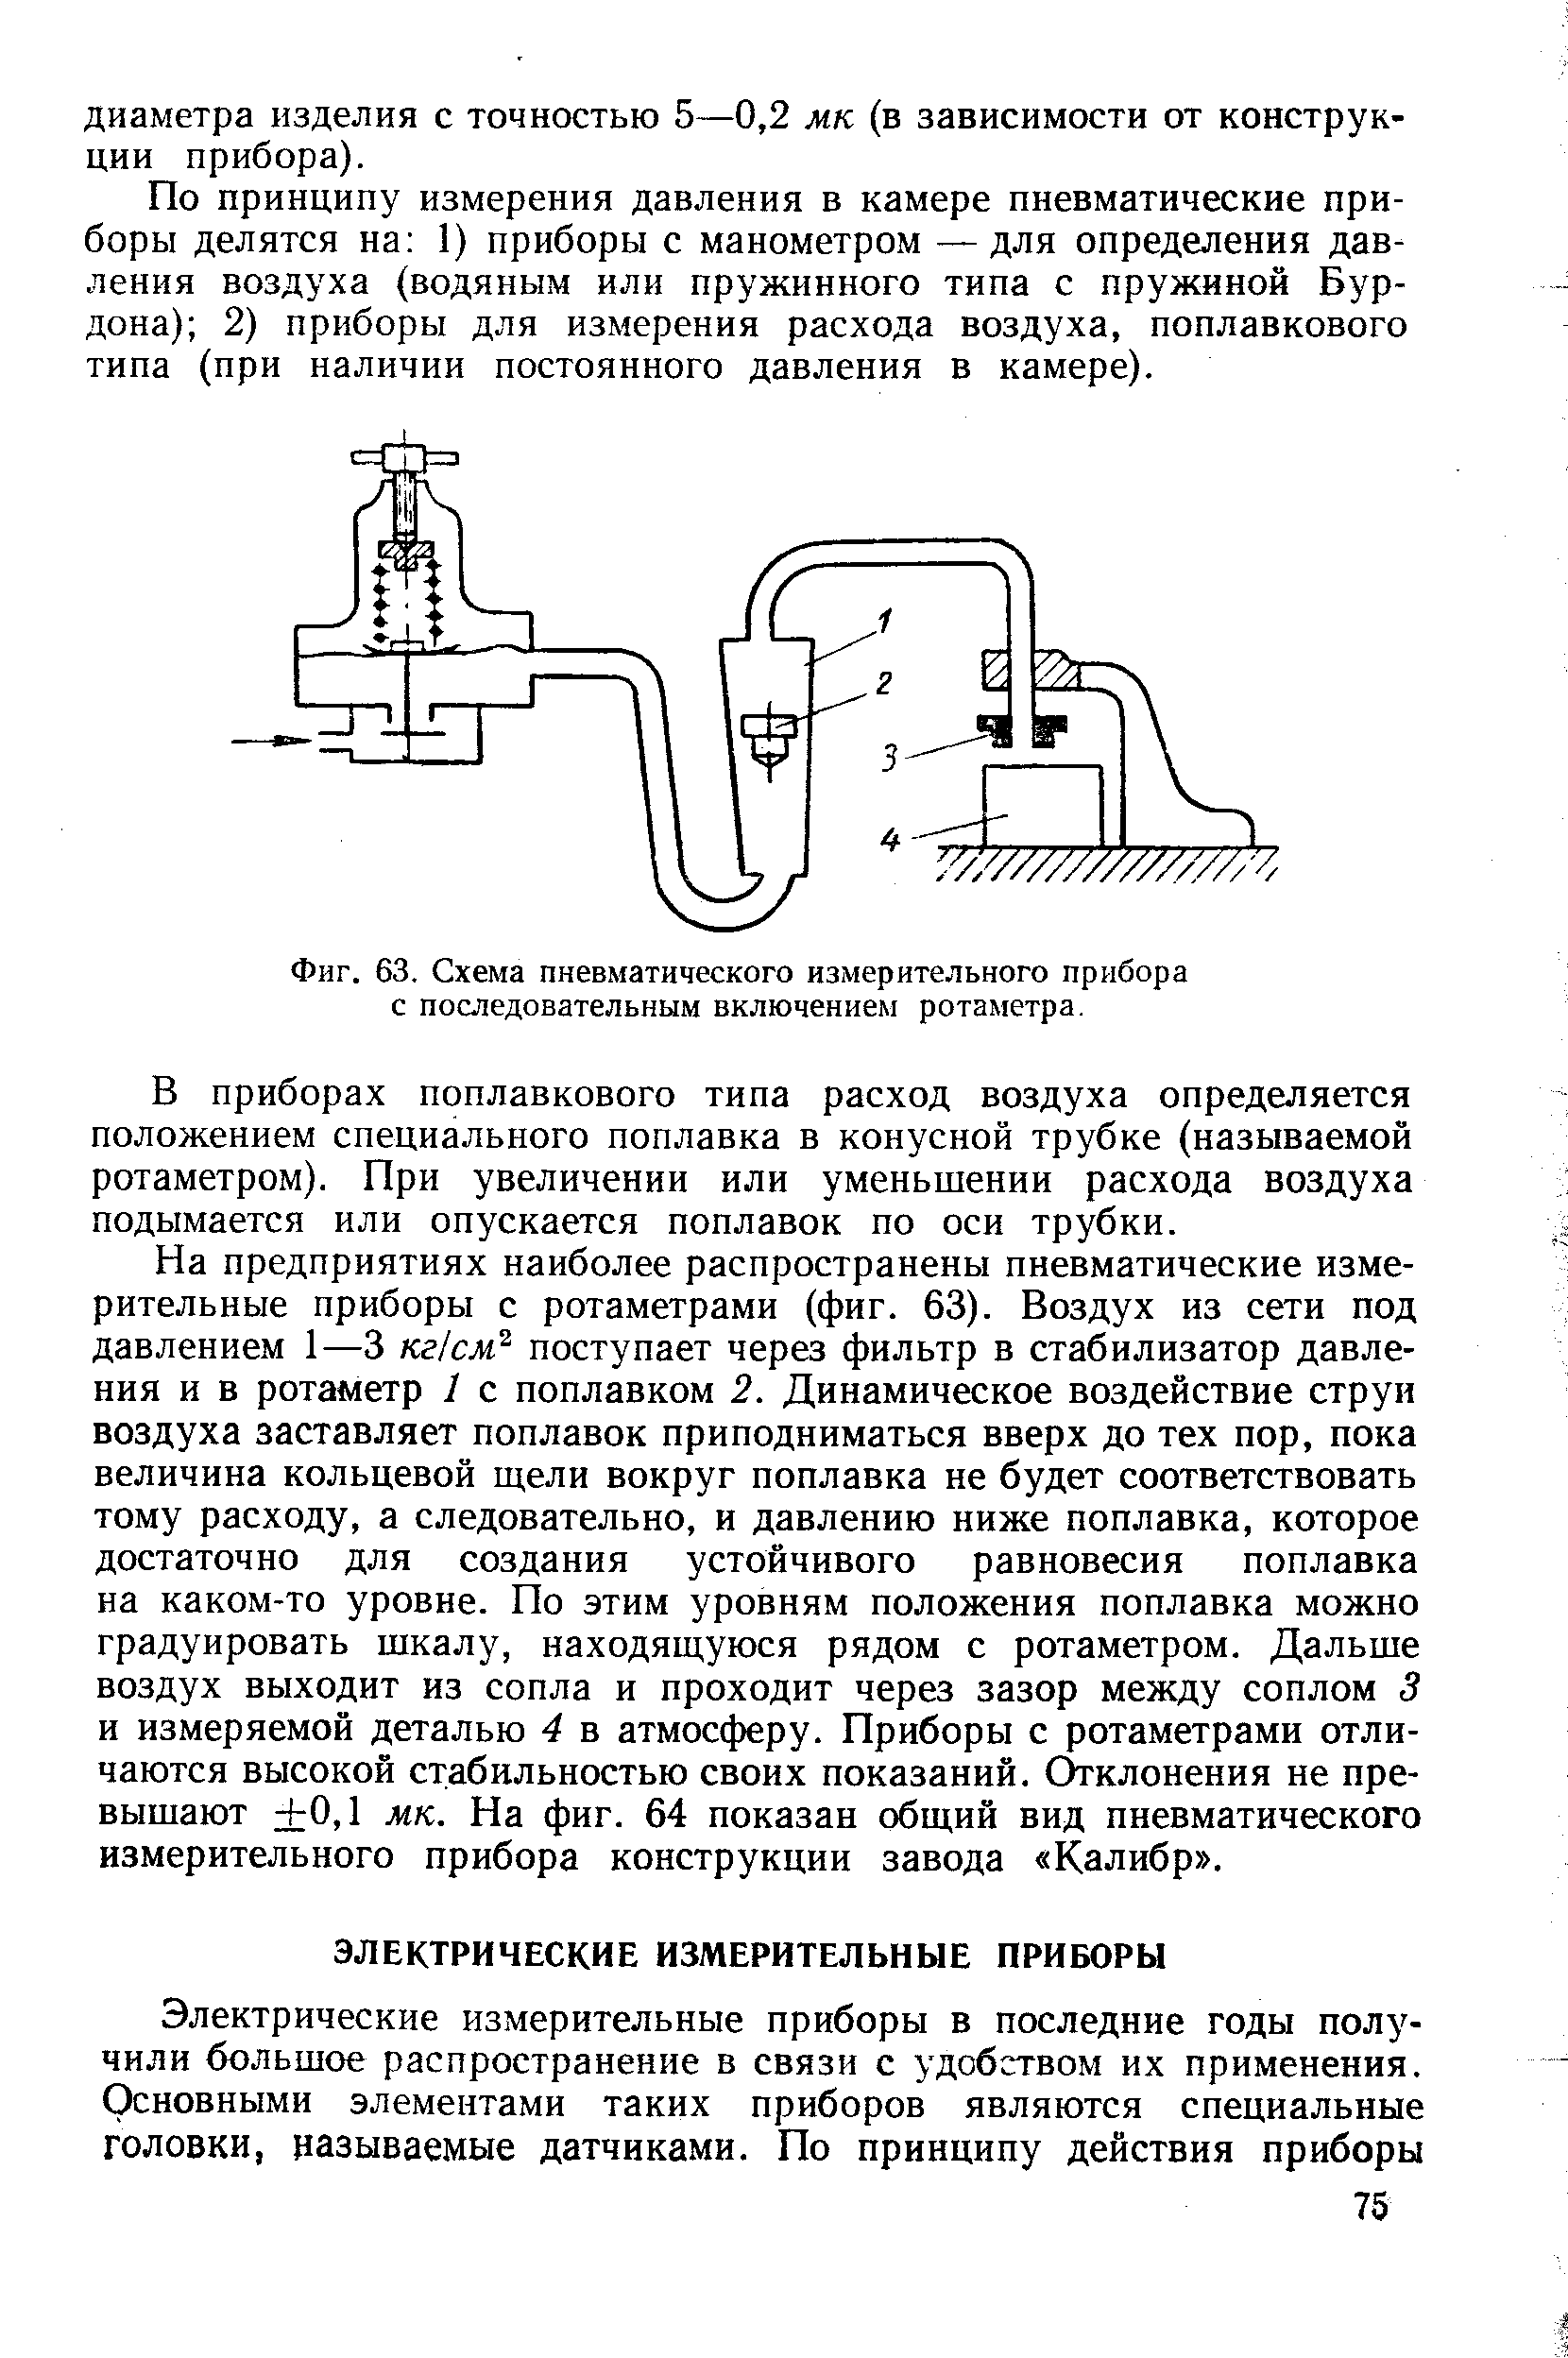 Фиг. 63. Схема пневматического измерительного прибора с последовательным включением ротаметра.
